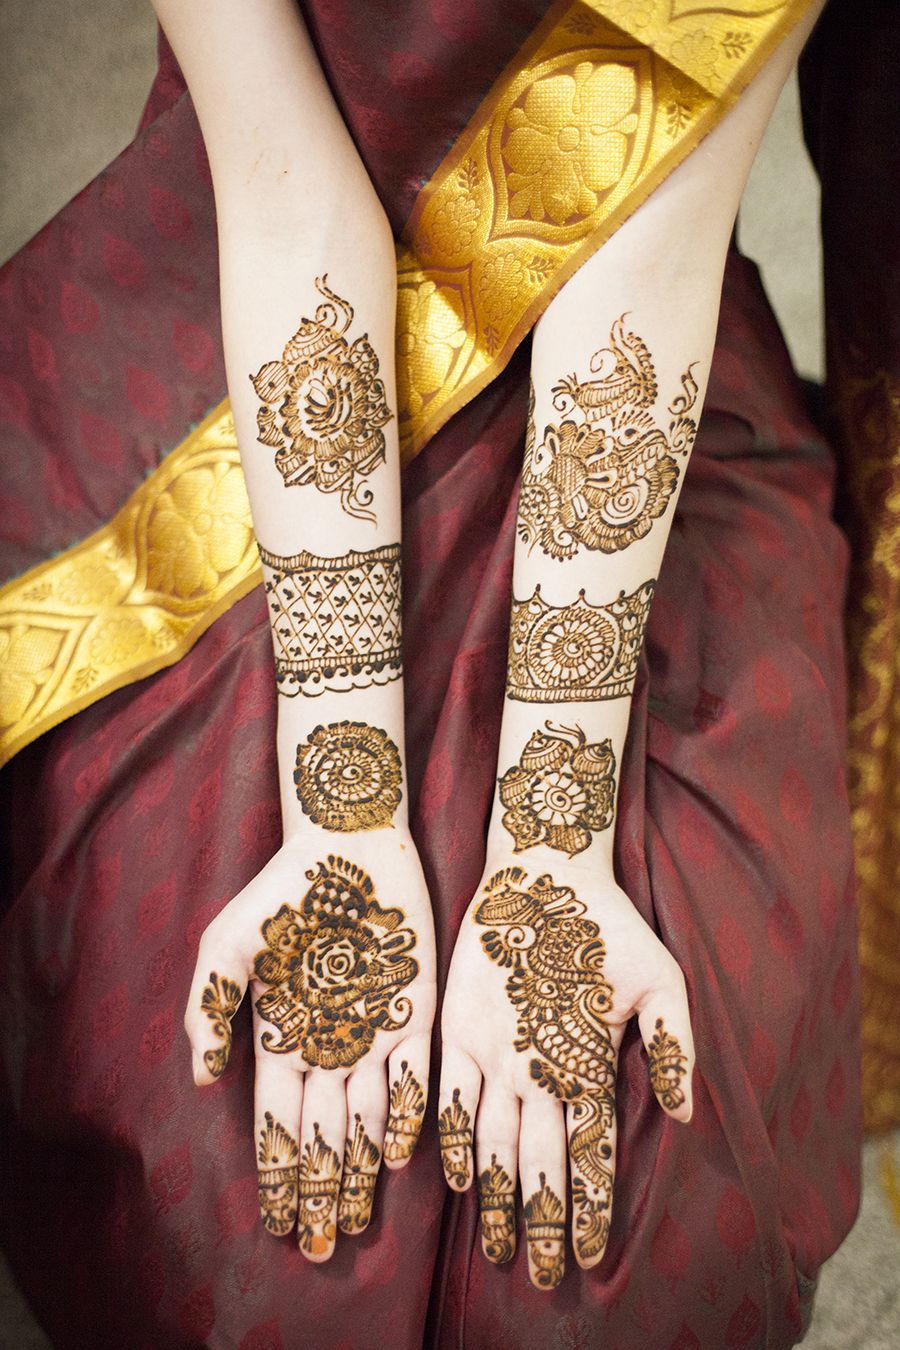 Arm henna against my saree.